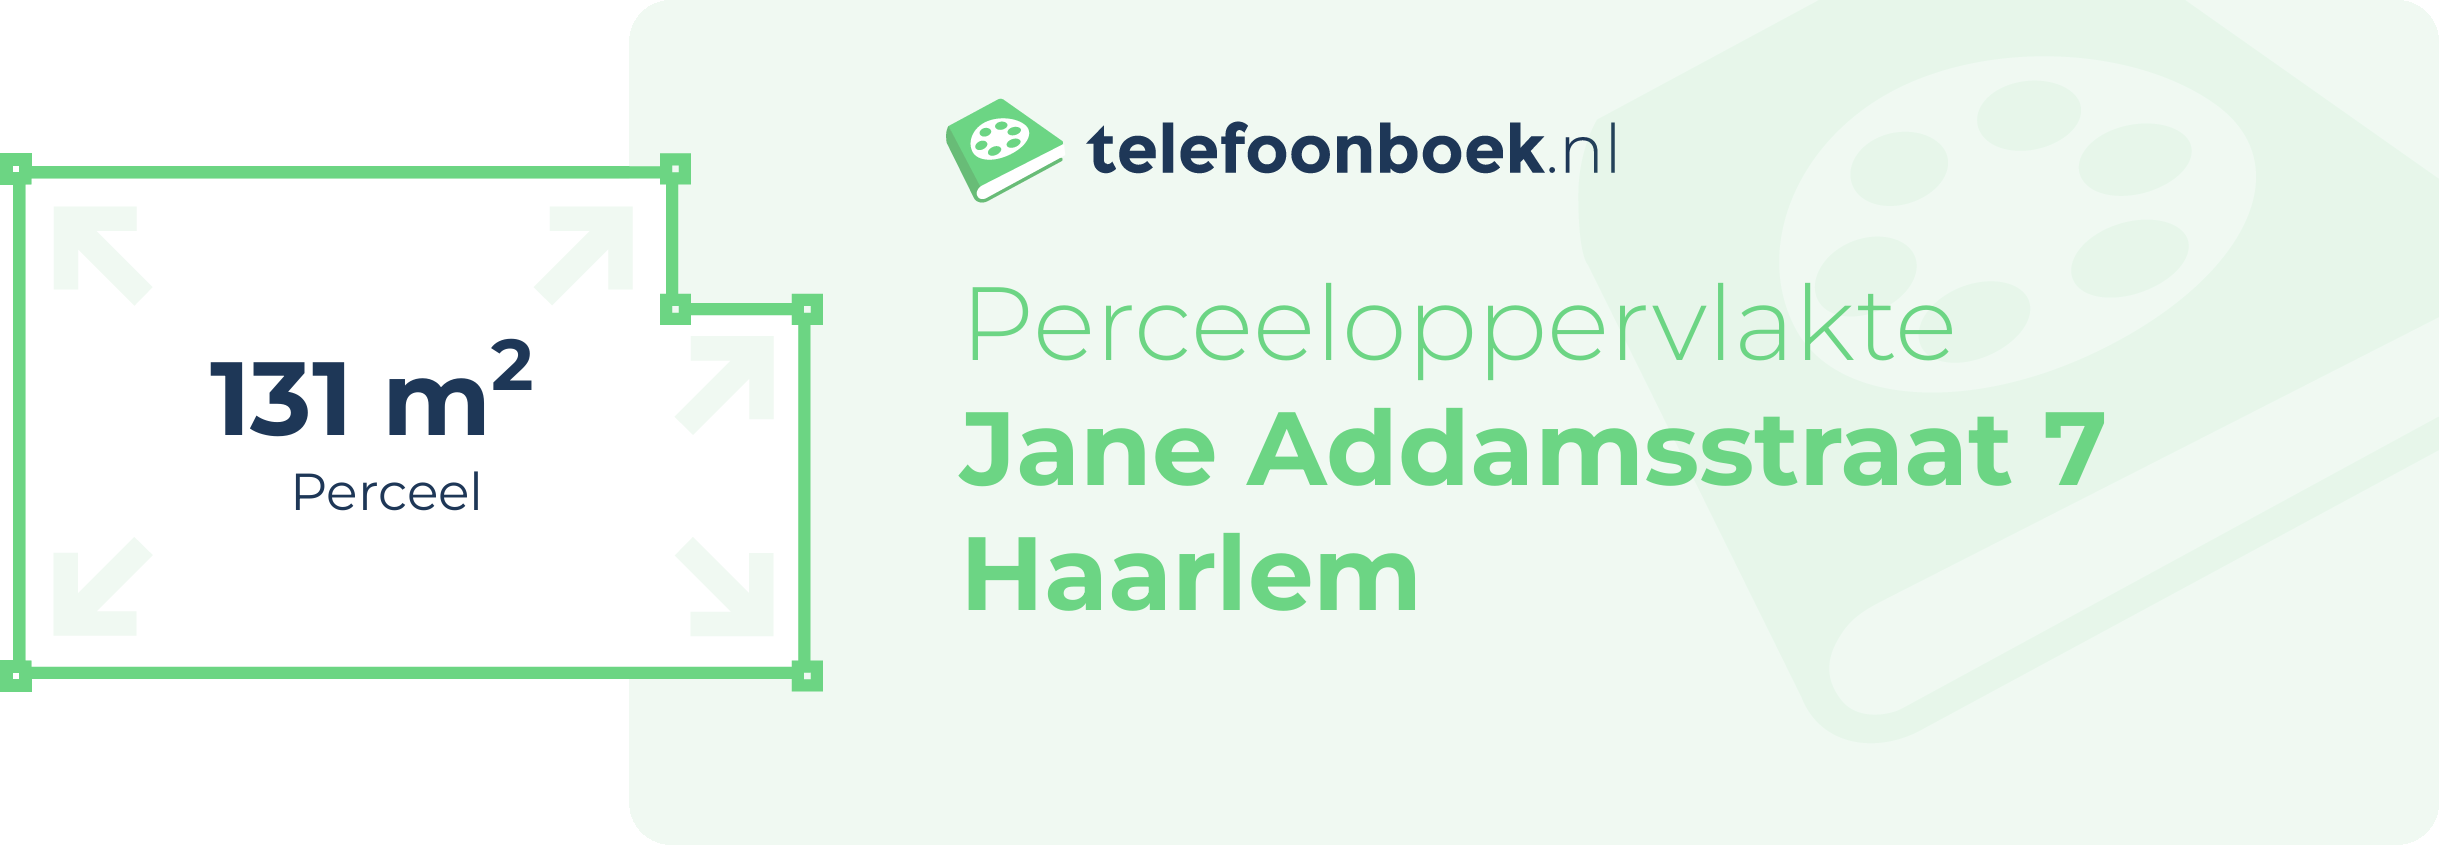 Perceeloppervlakte Jane Addamsstraat 7 Haarlem